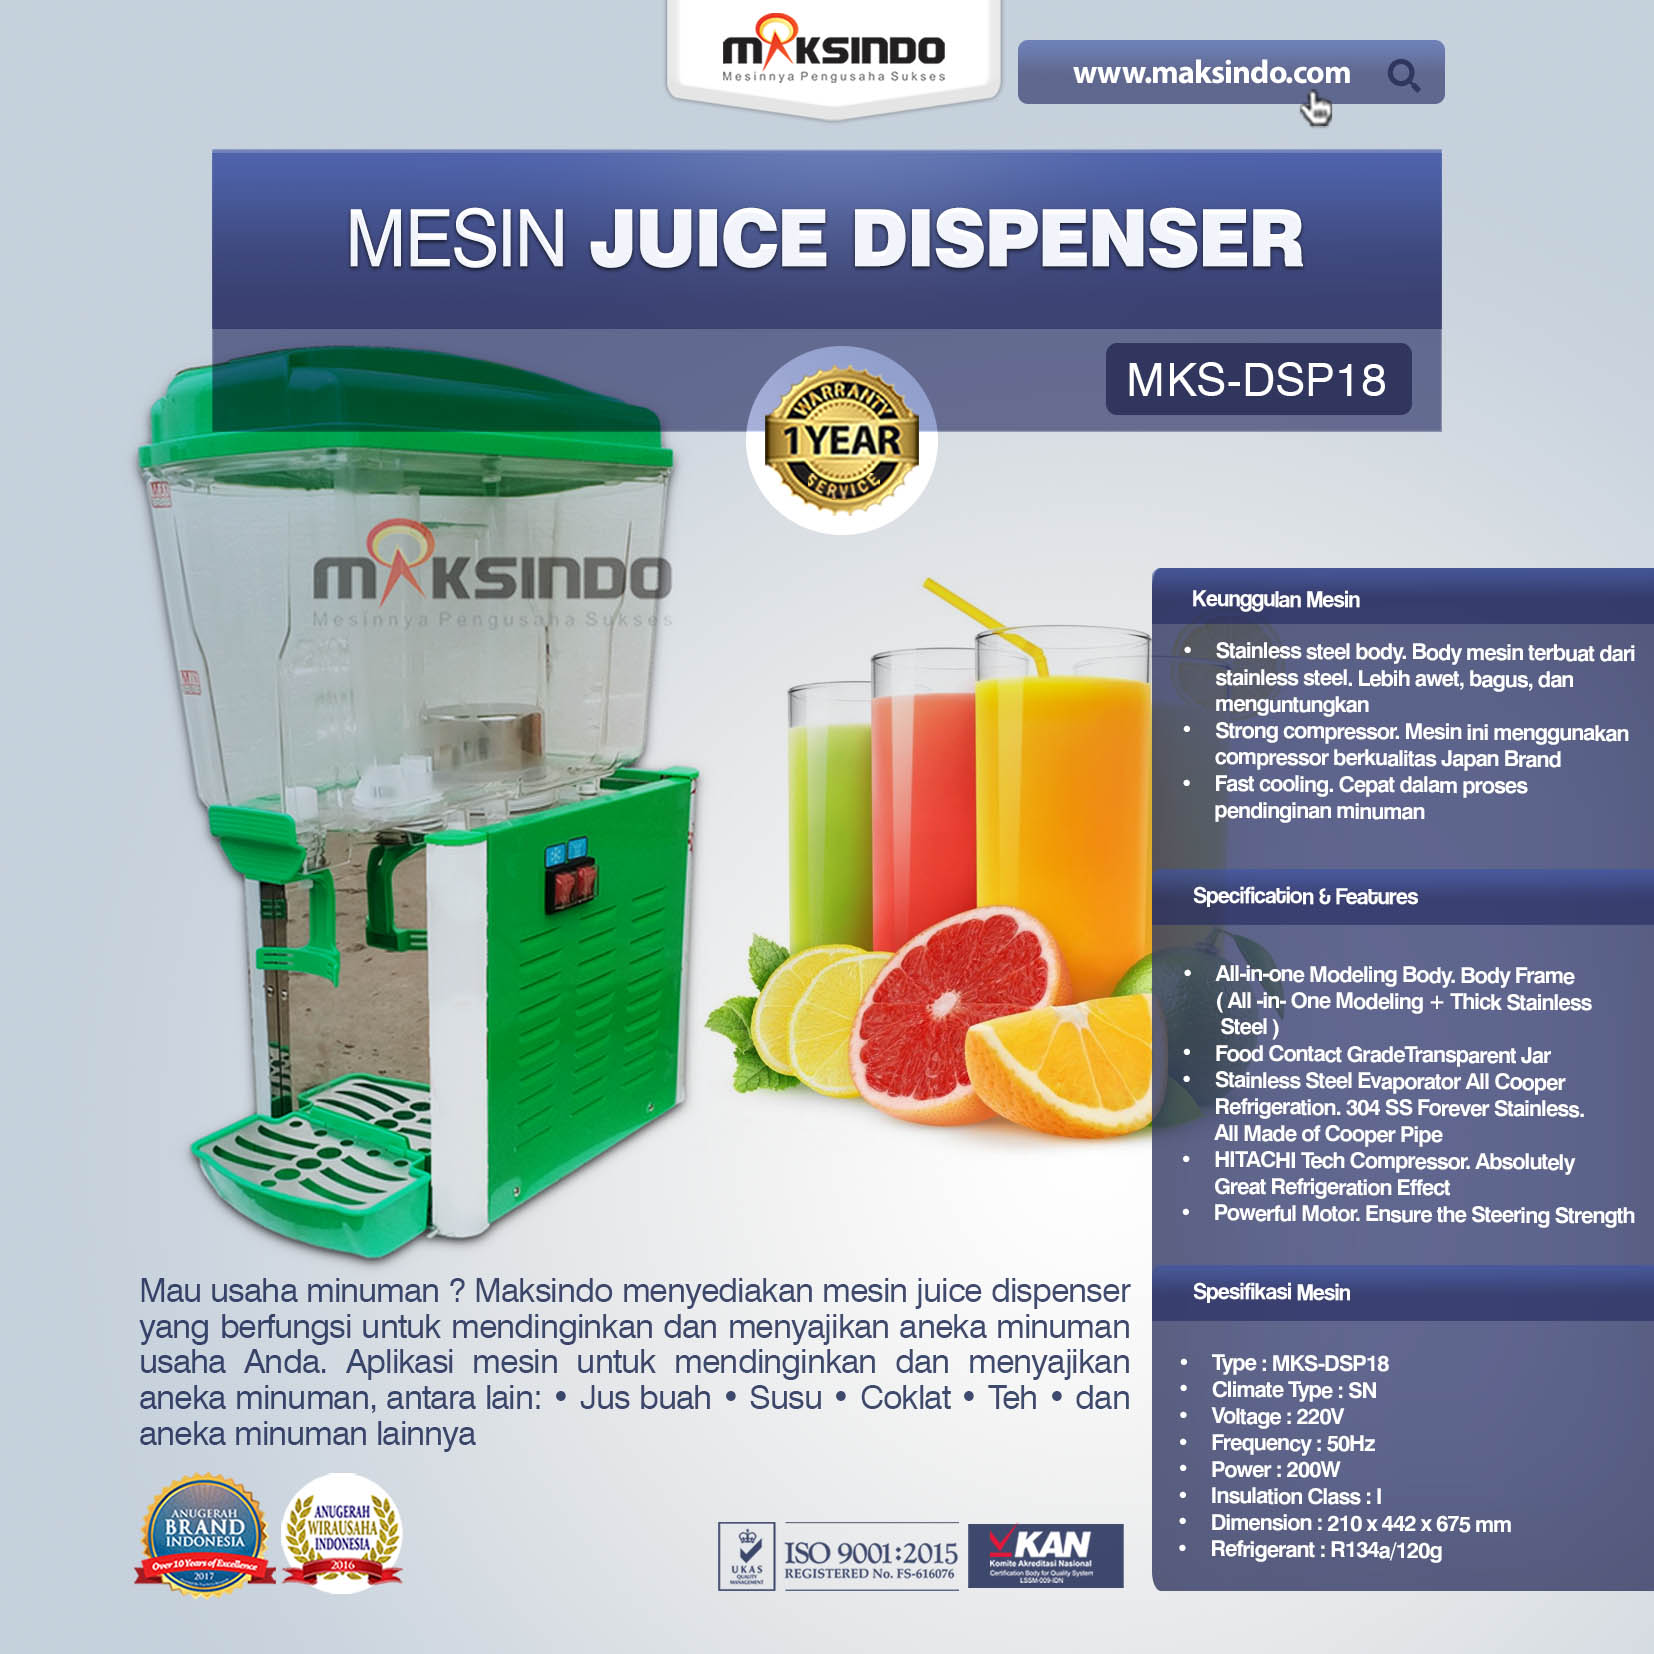 Jual Mesin Juice Dispenser MKS-DSP18 di Medan